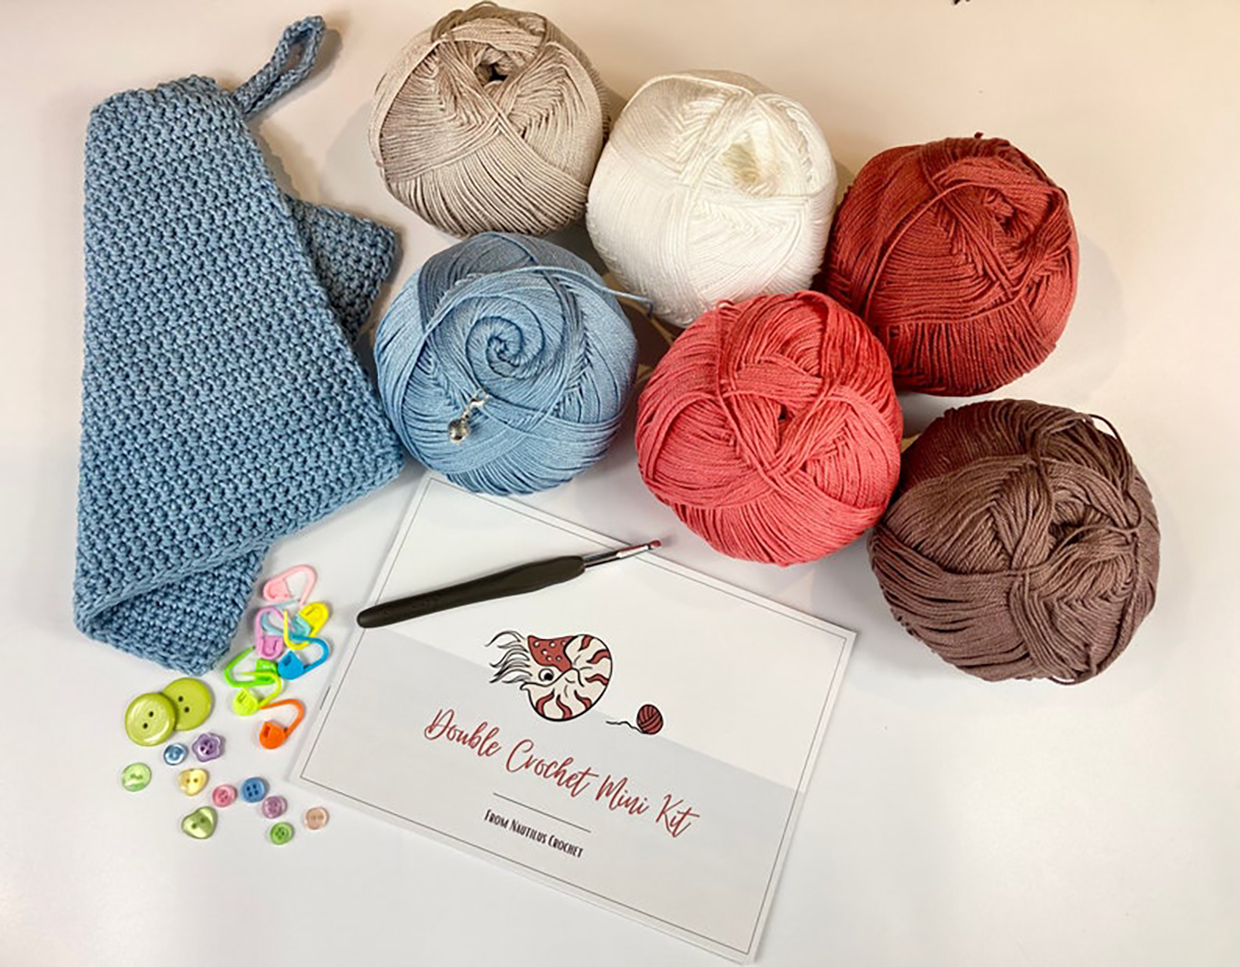 Crochet Starter Kit - Crochet your way